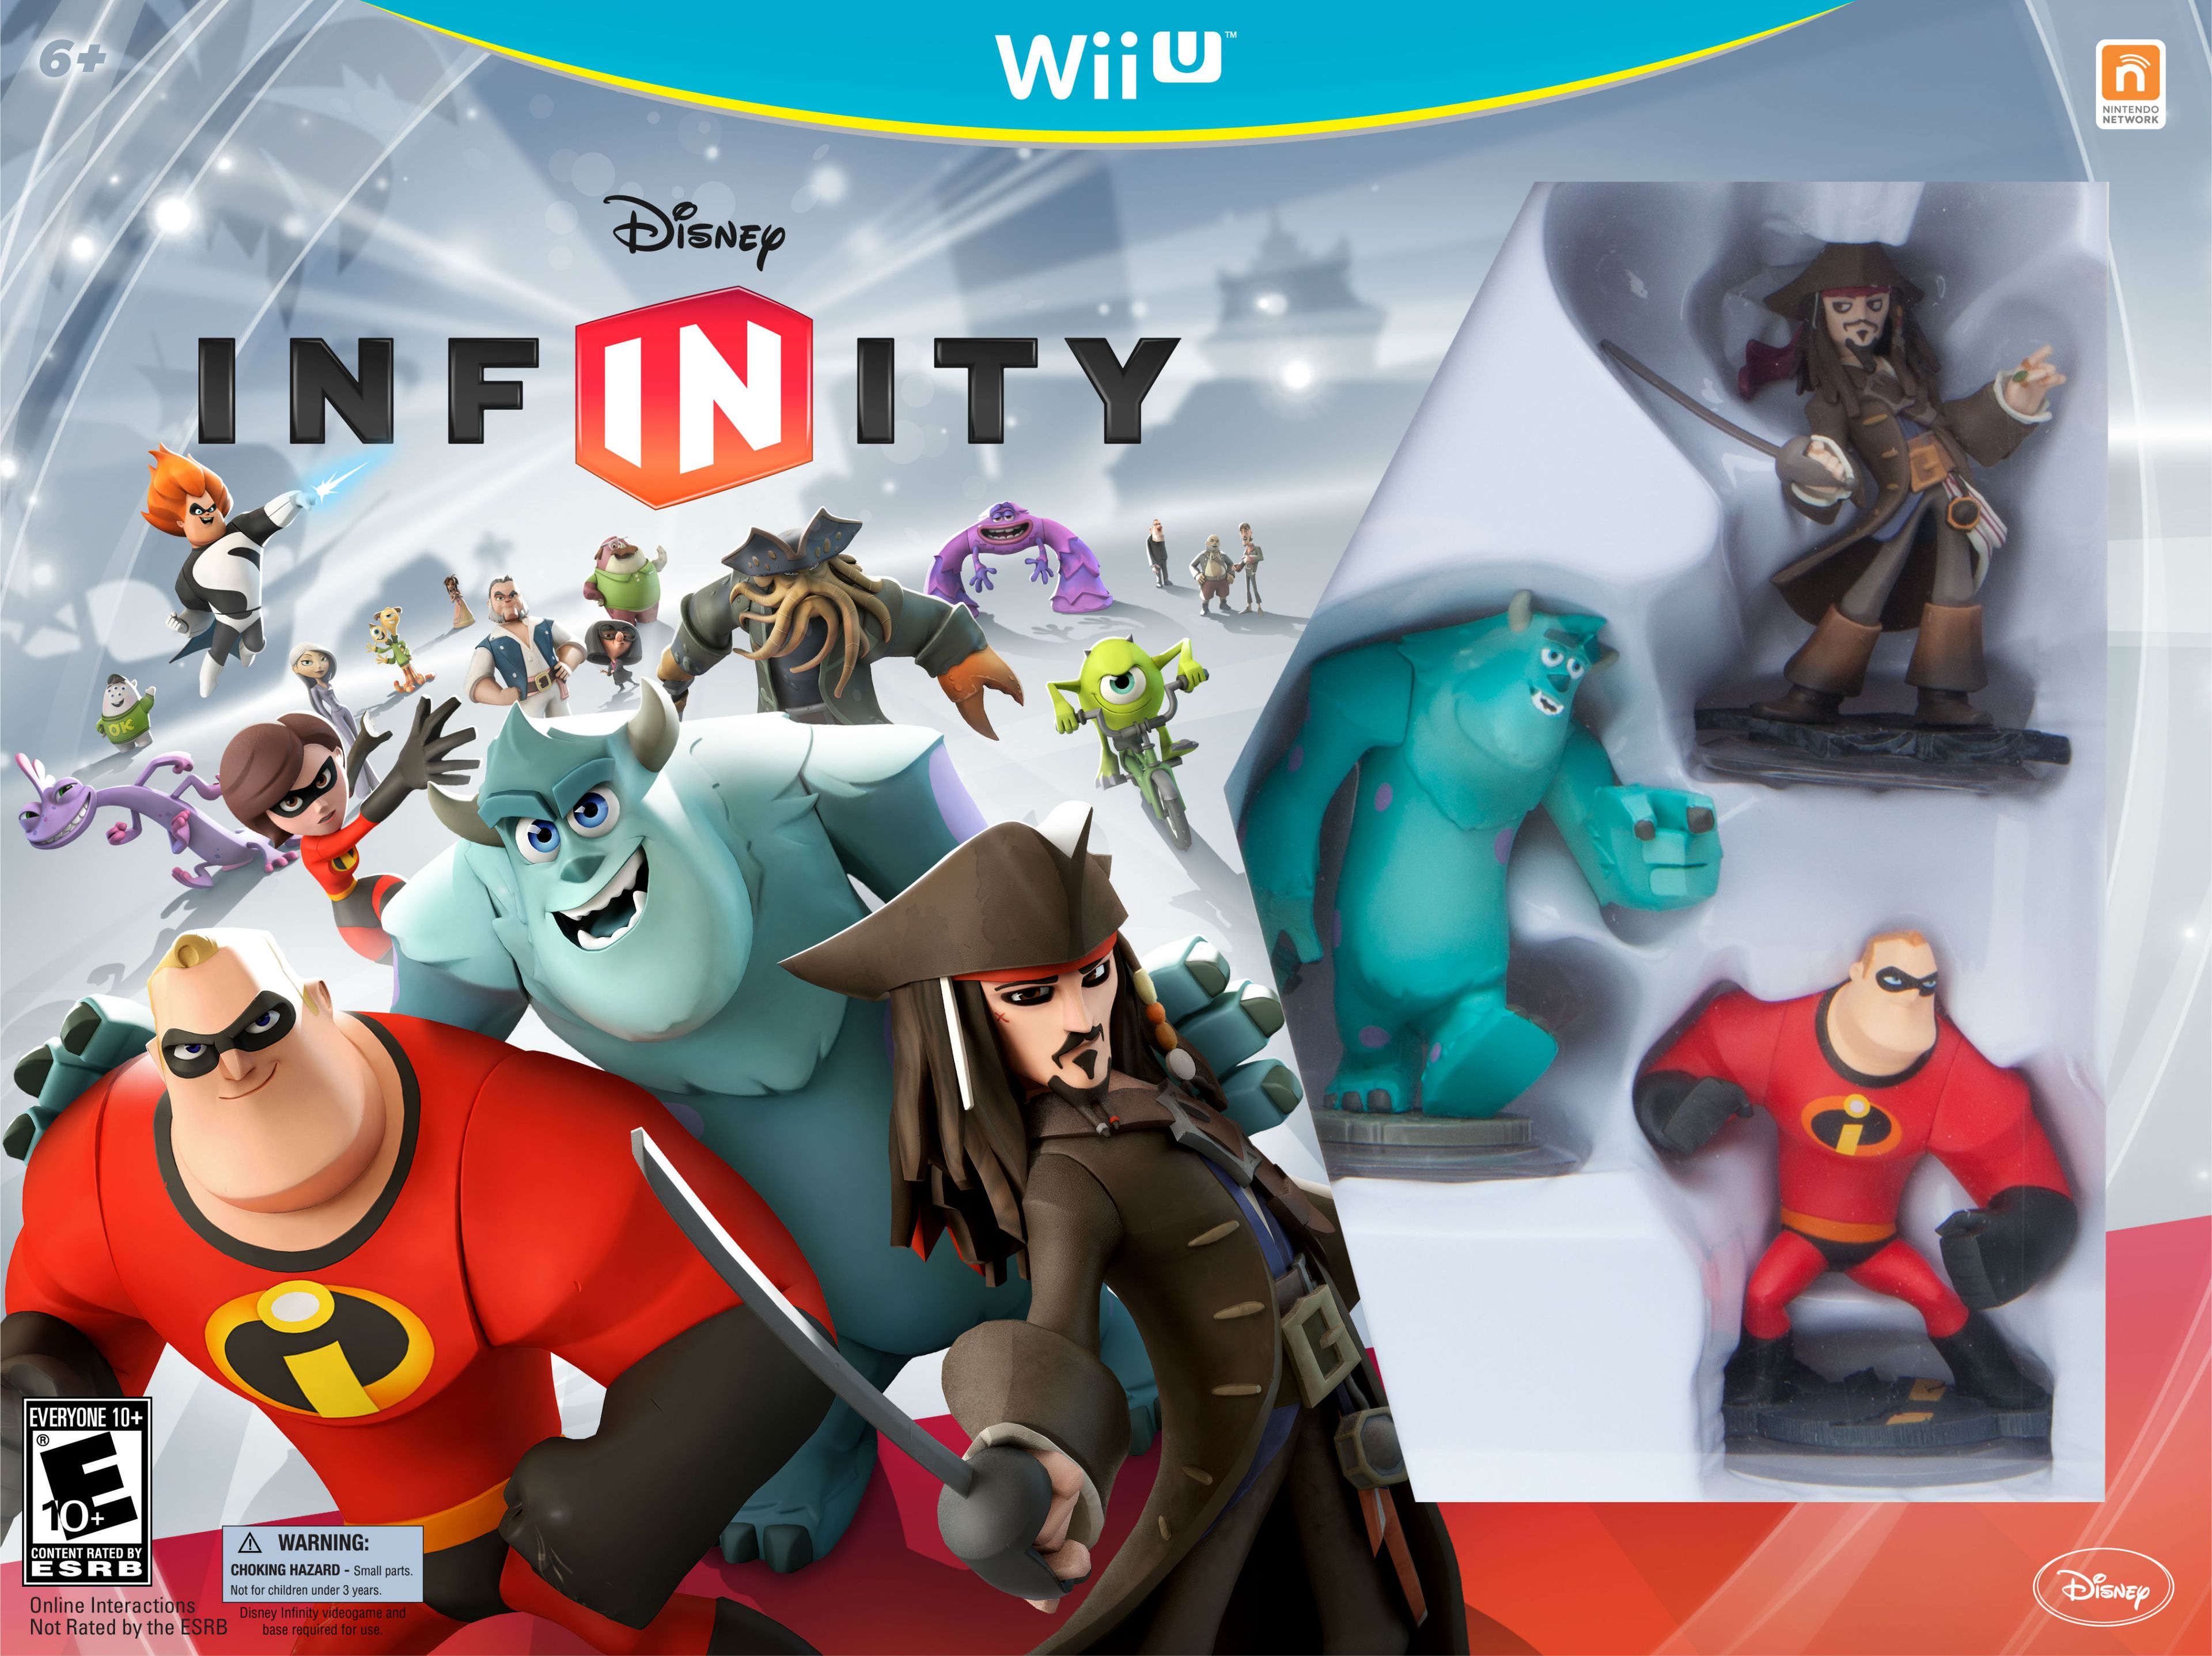 Disney Infinity recibirá un parche para Wii U